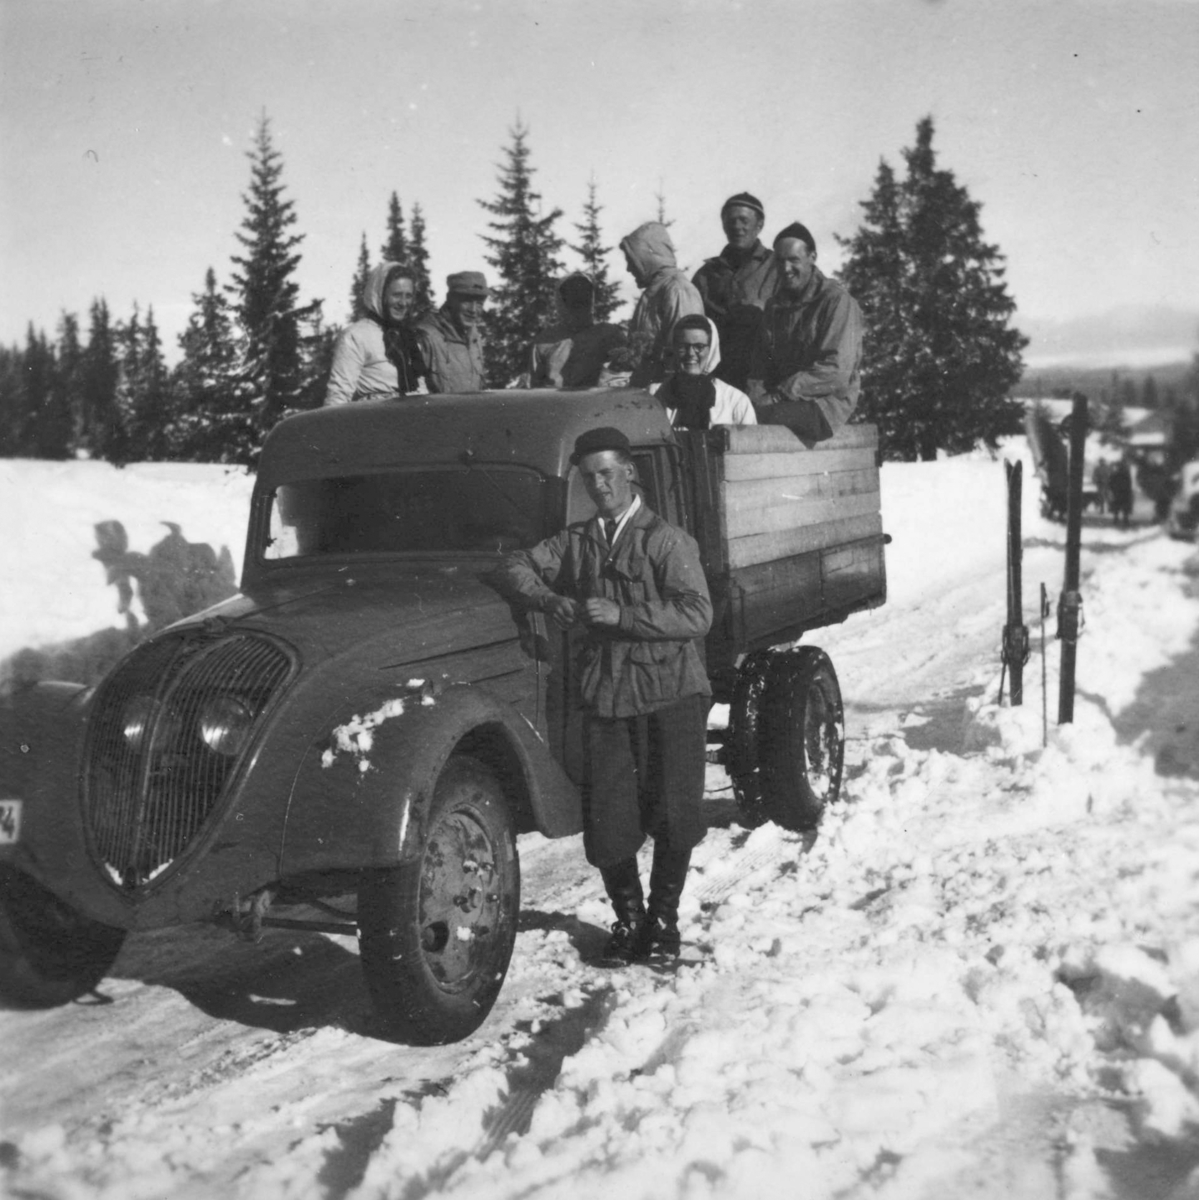 Peugeot lastebil 1950 modell, påsketur 1957. Påsketurister på vei hjem fra Bjønnåsen. Sjåfør og eier av lastebilen Johannes Kvernvolden.